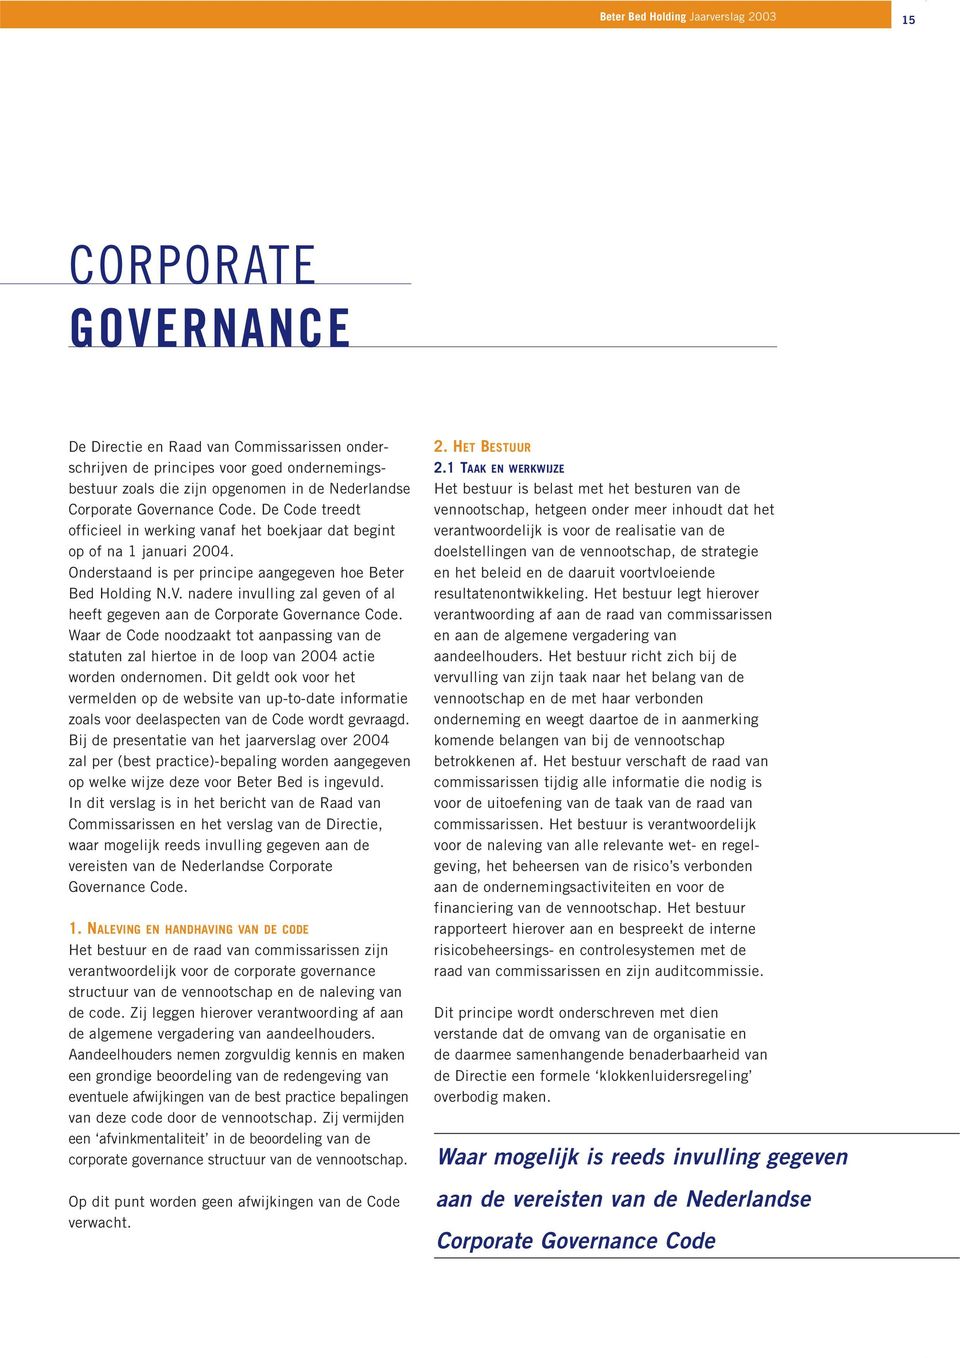 nadere invulling zal geven of al heeft gegeven aan de Corporate Governance Code. Waar de Code noodzaakt tot aanpassing van de statuten zal hiertoe in de loop van 2004 actie worden ondernomen.